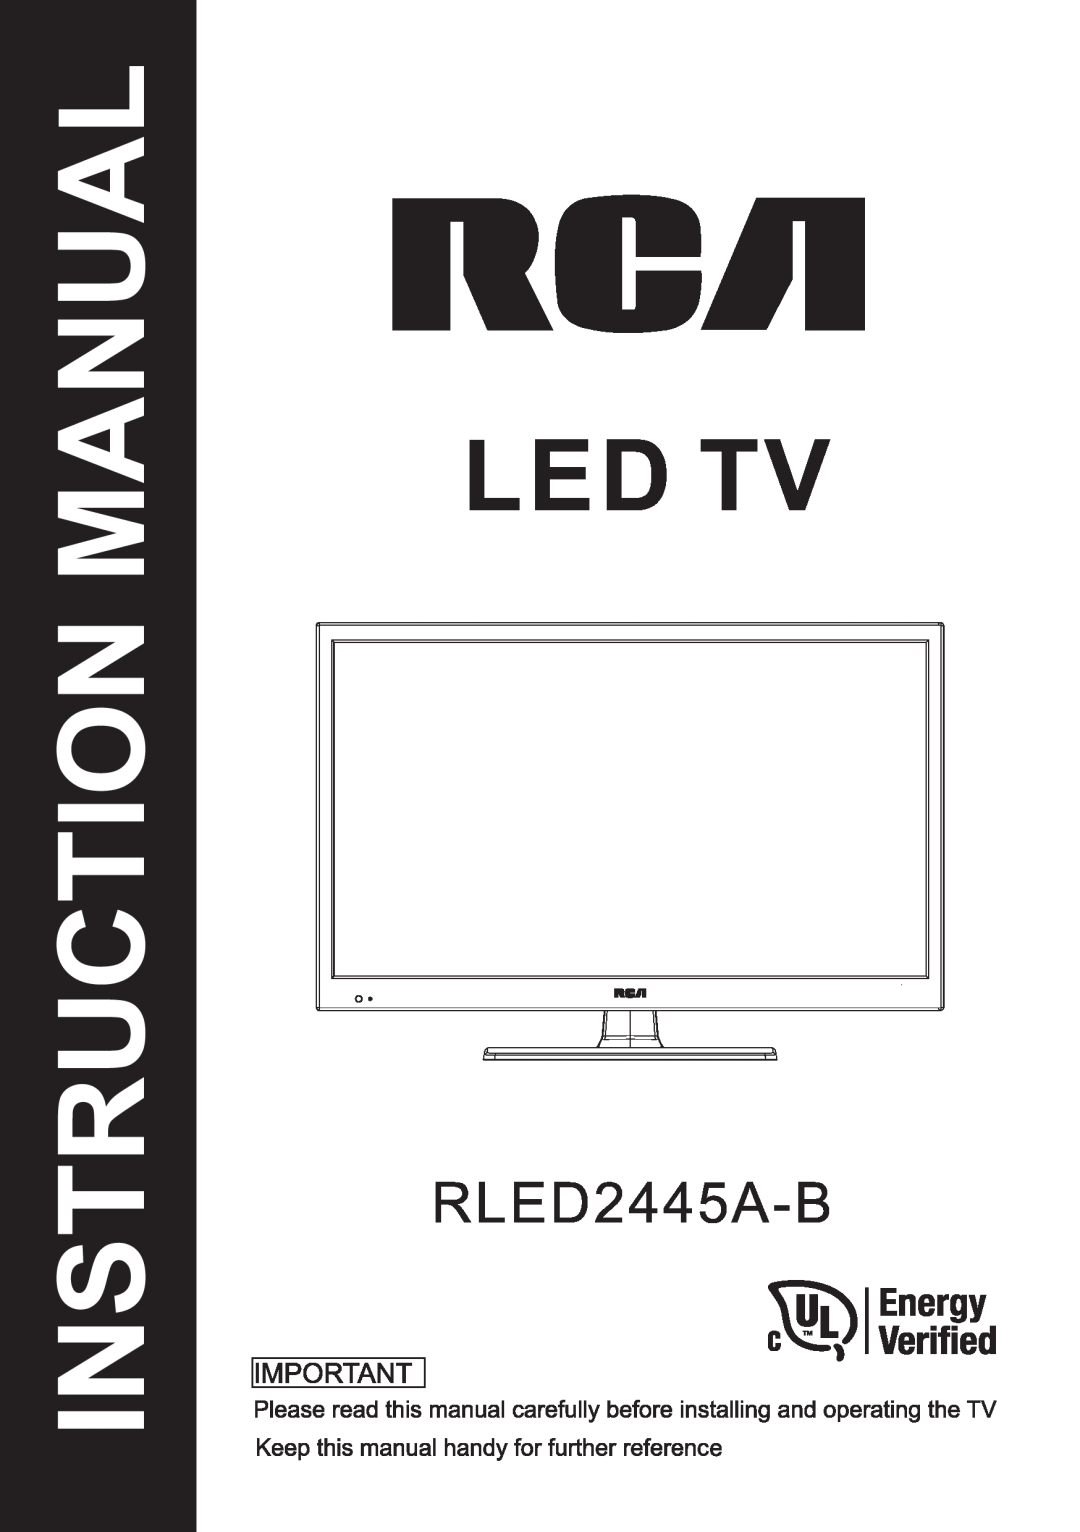 ProScan RLED2445A-B instruction manual Led Tv, Instruction Manual 